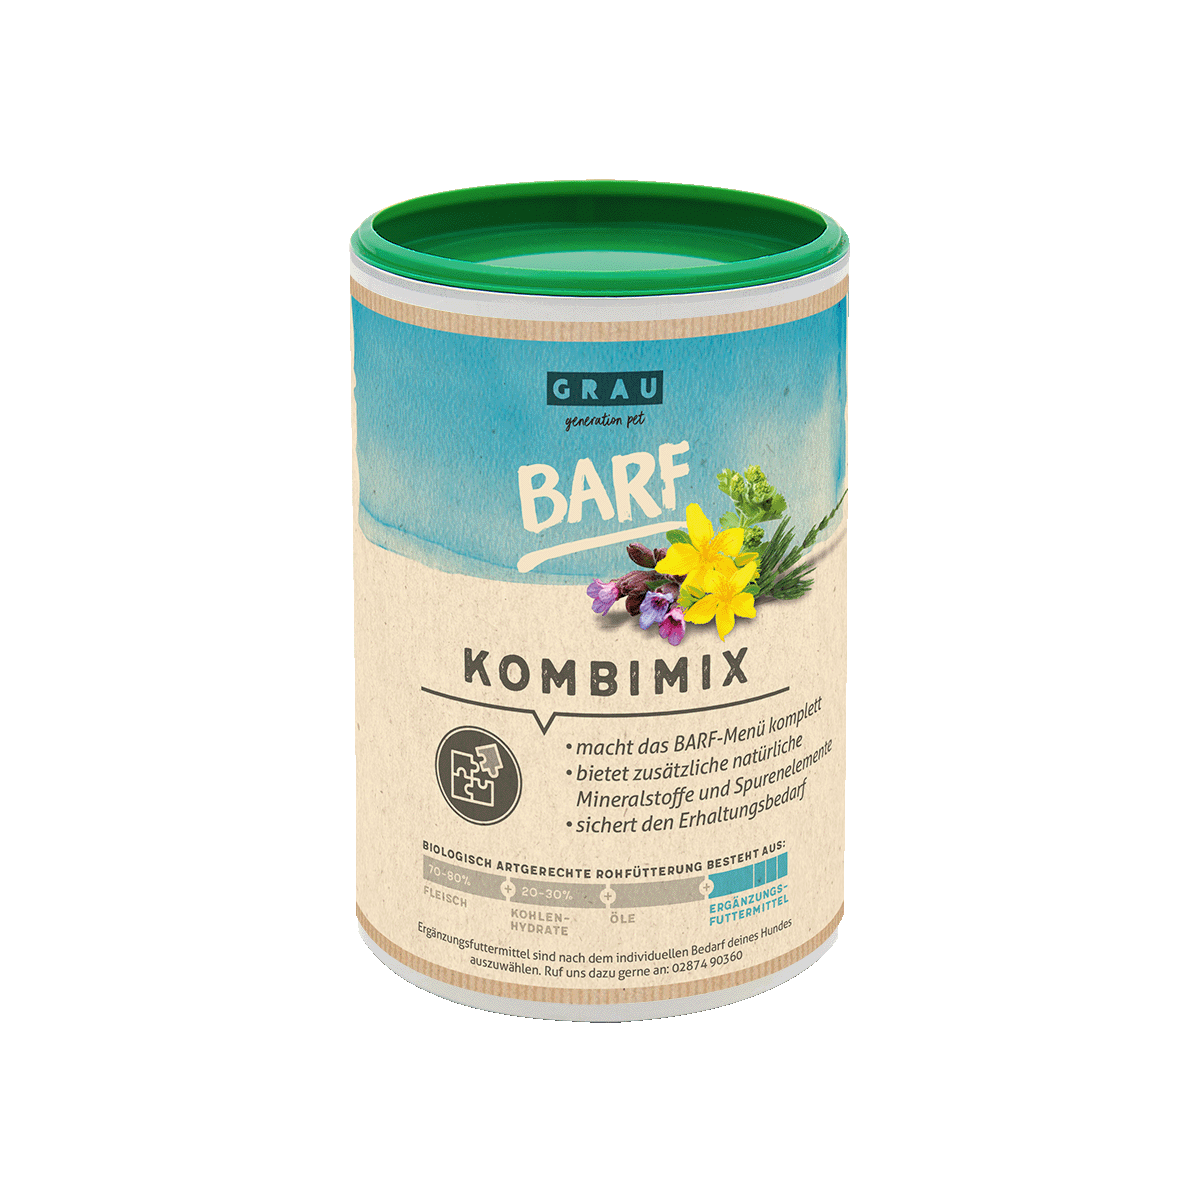 BARF KombiMix komplettiert das BARF-Menü und versorgt mit allen notwendigen Nährstoffen